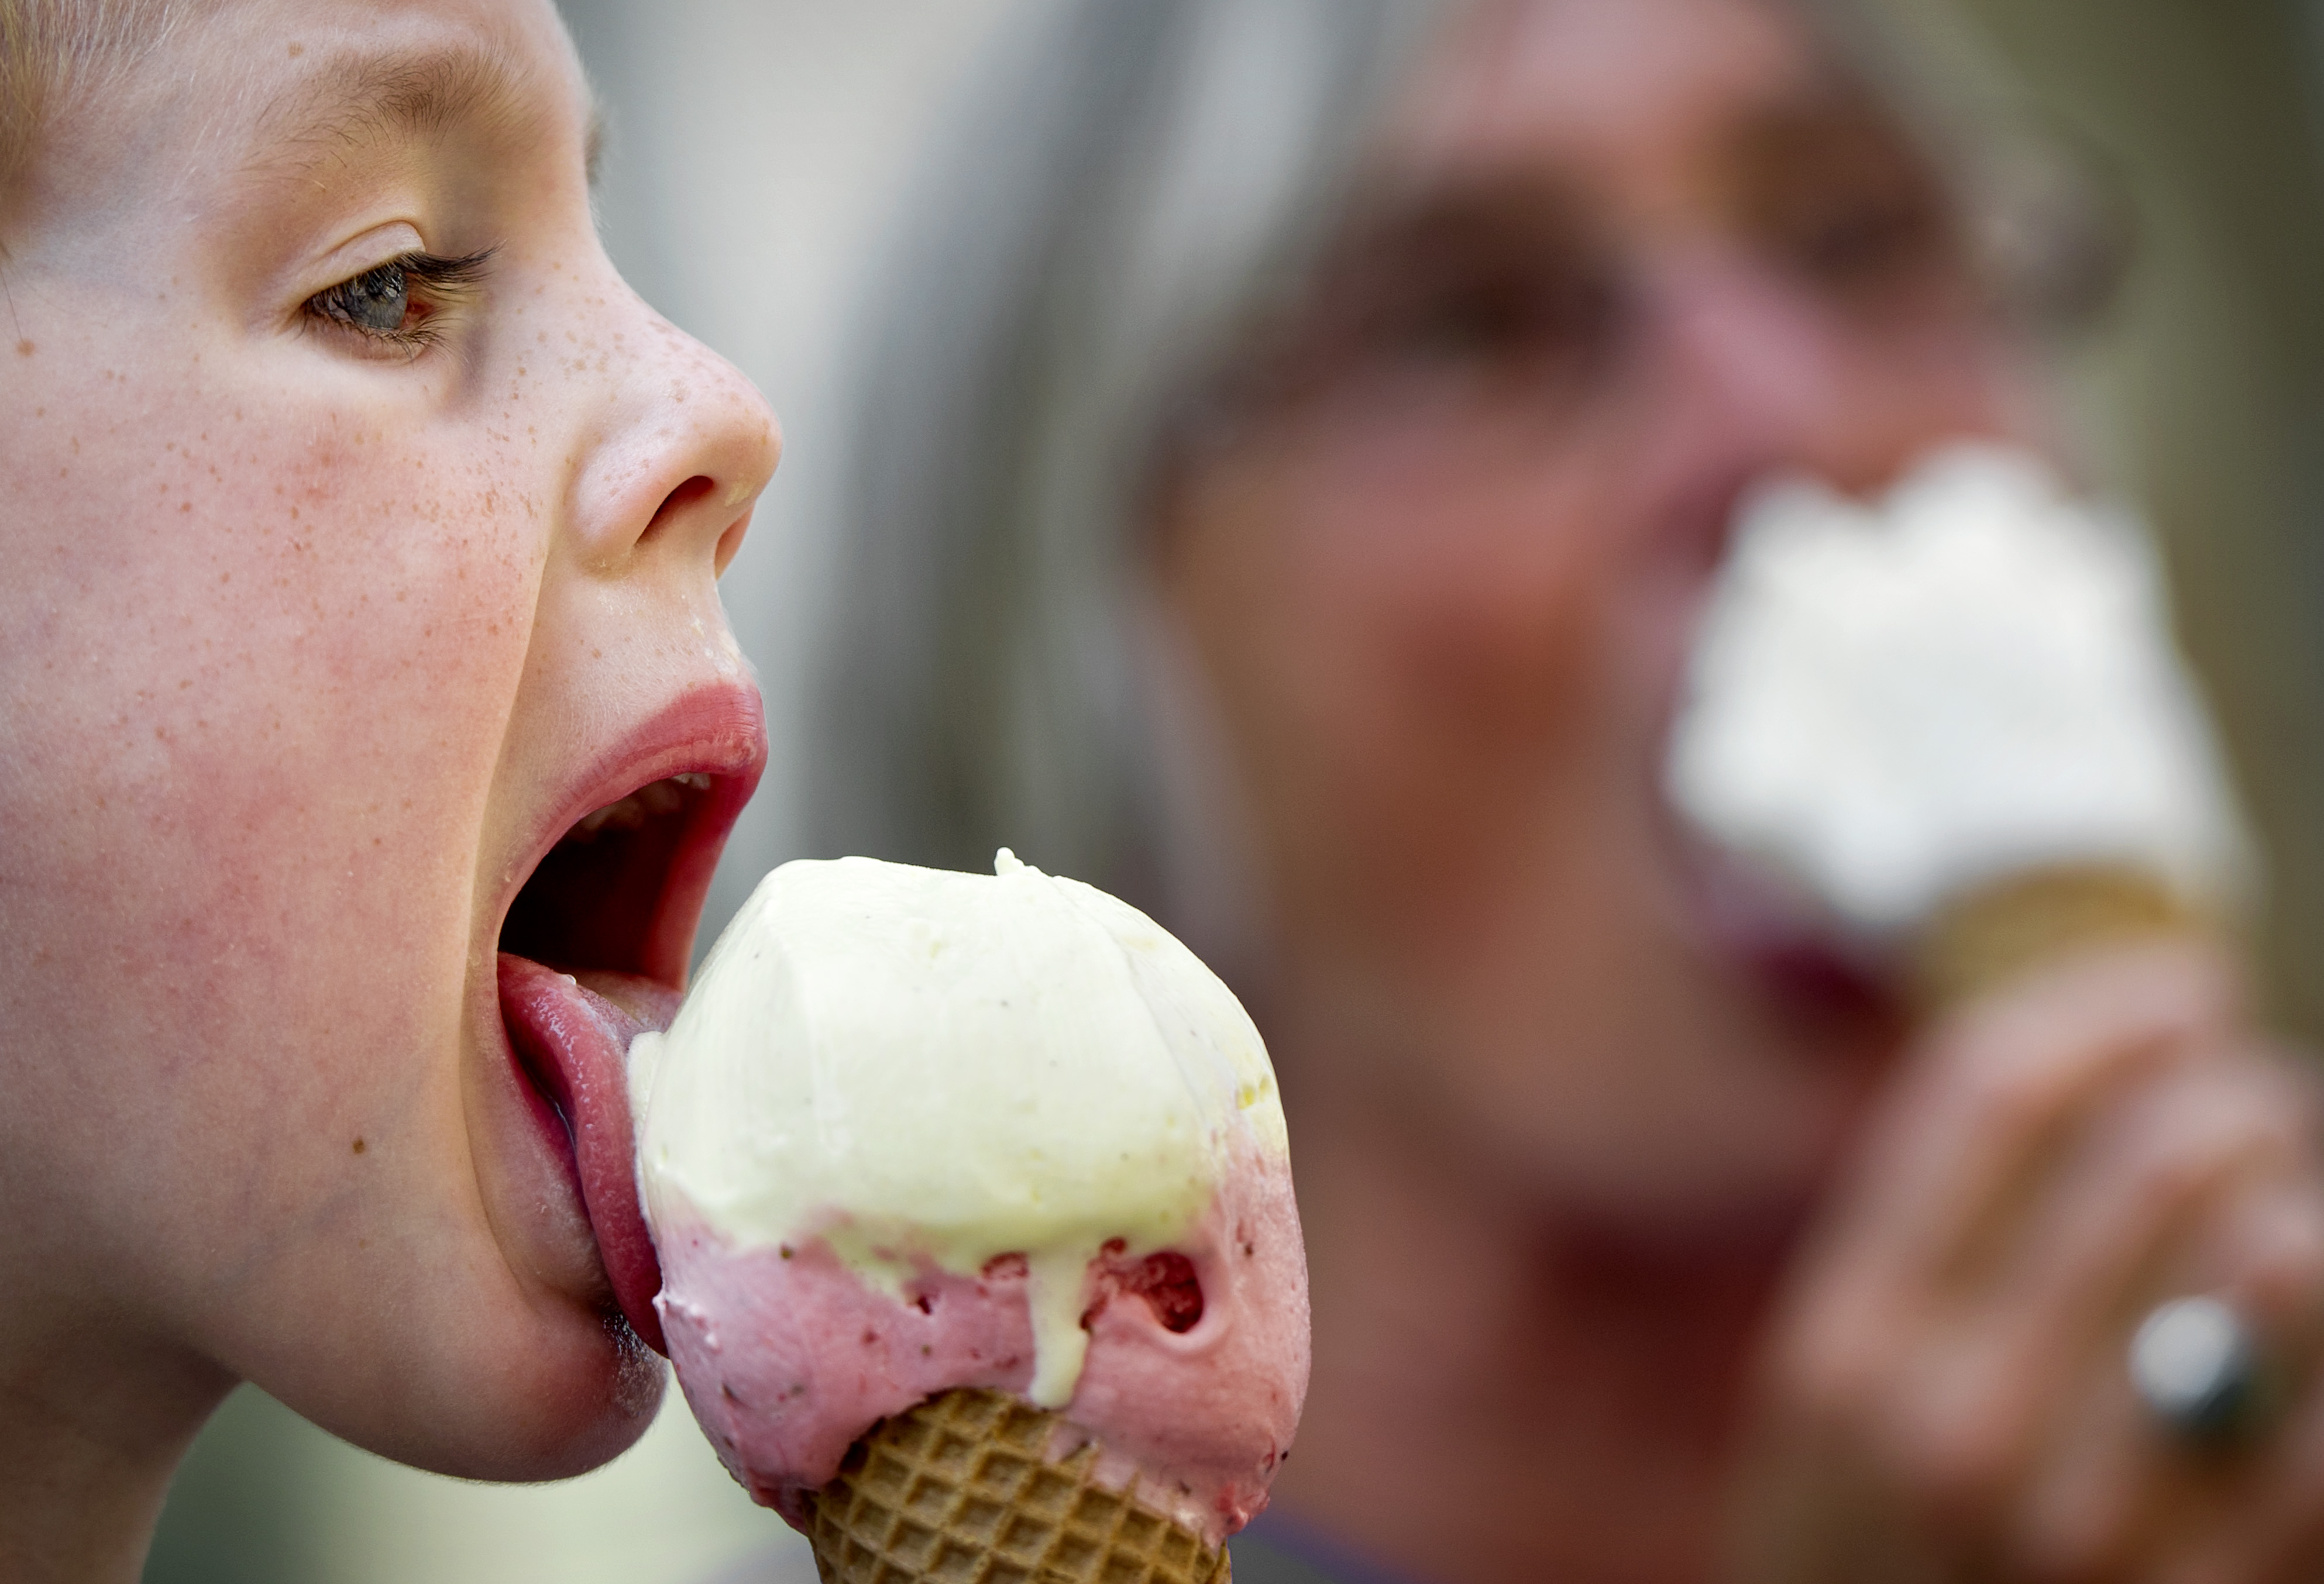 Можно ли мороженое при боли в горле